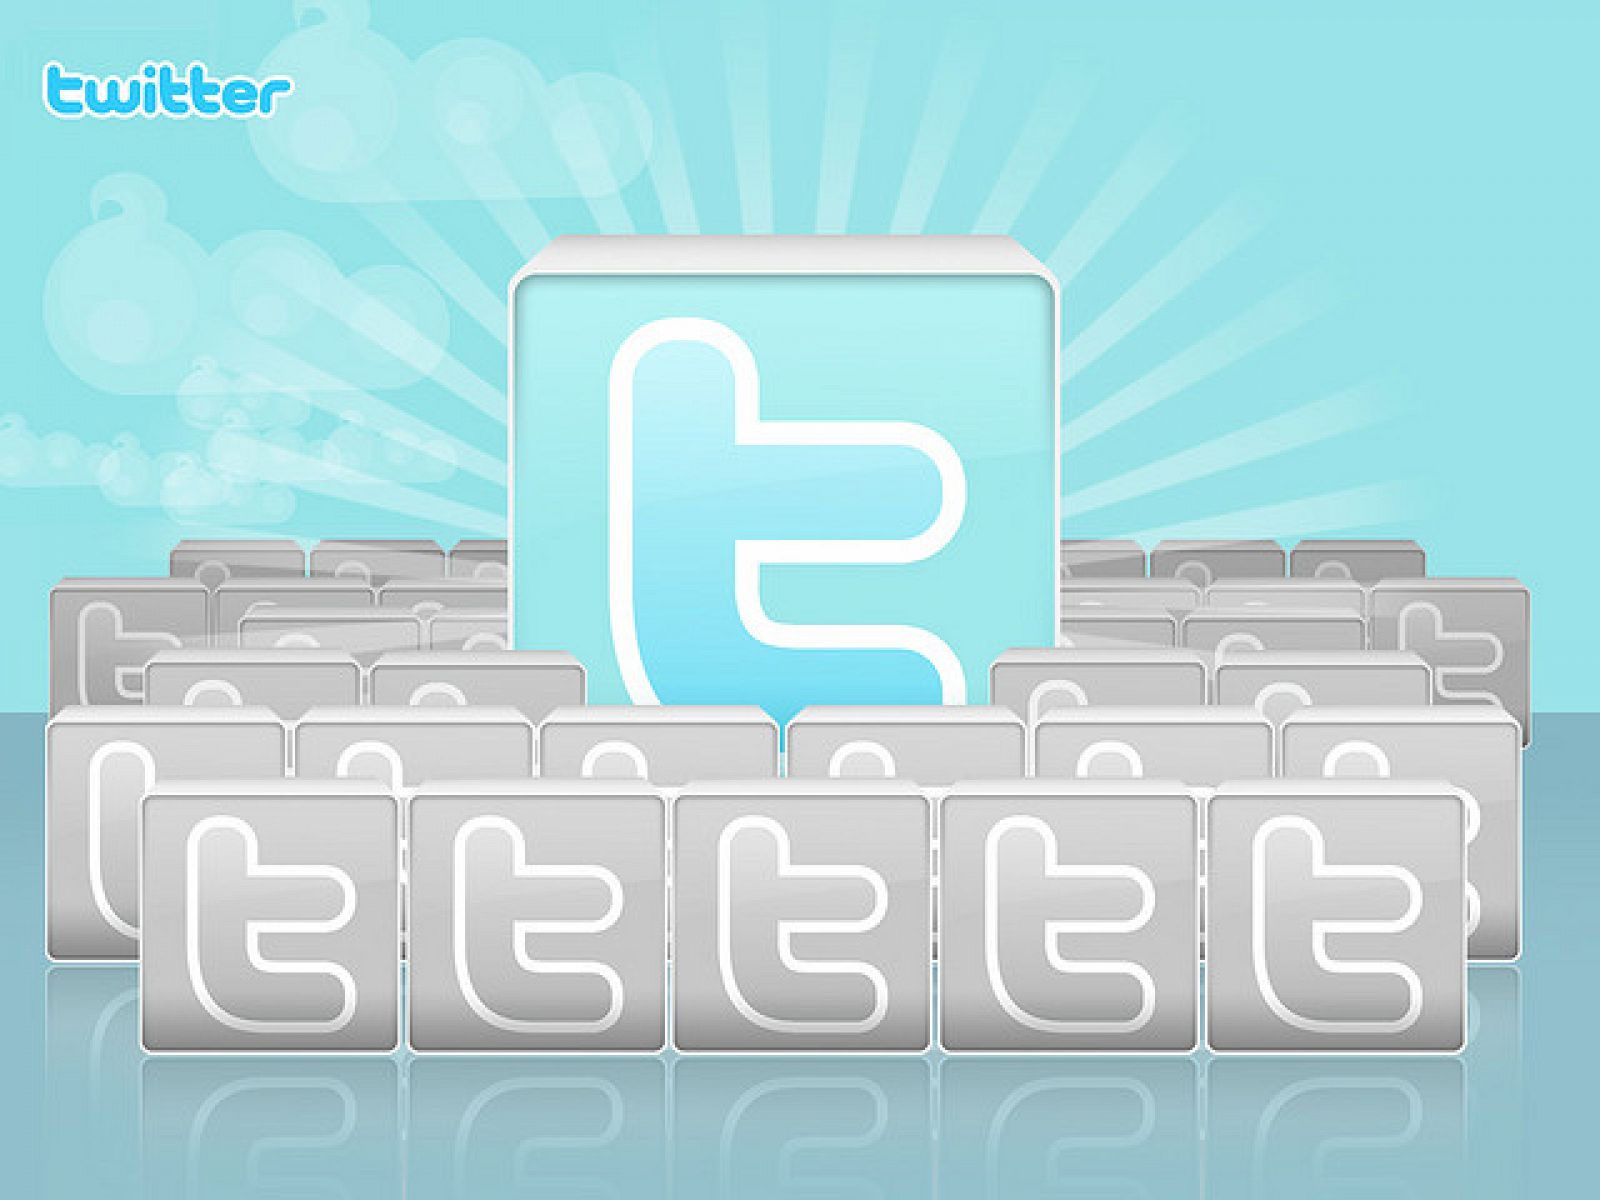 El término 'Tweet' ha sido empleado por distintas compañías y Twitter no puede registrarlo como marca